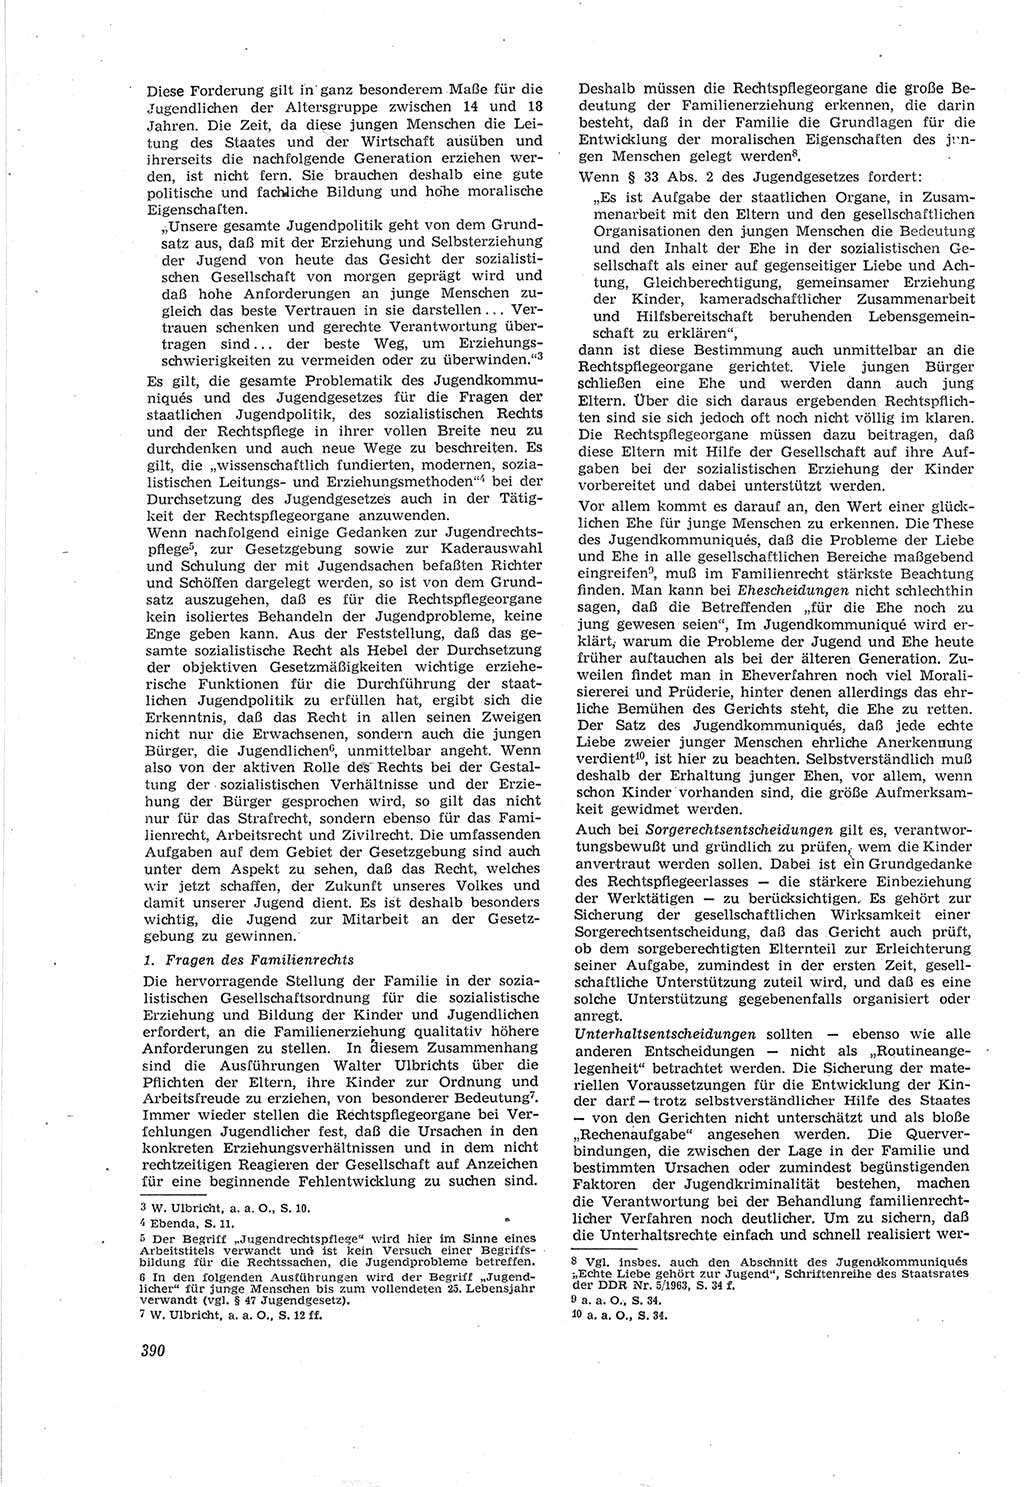 Neue Justiz (NJ), Zeitschrift für Recht und Rechtswissenschaft [Deutsche Demokratische Republik (DDR)], 18. Jahrgang 1964, Seite 390 (NJ DDR 1964, S. 390)